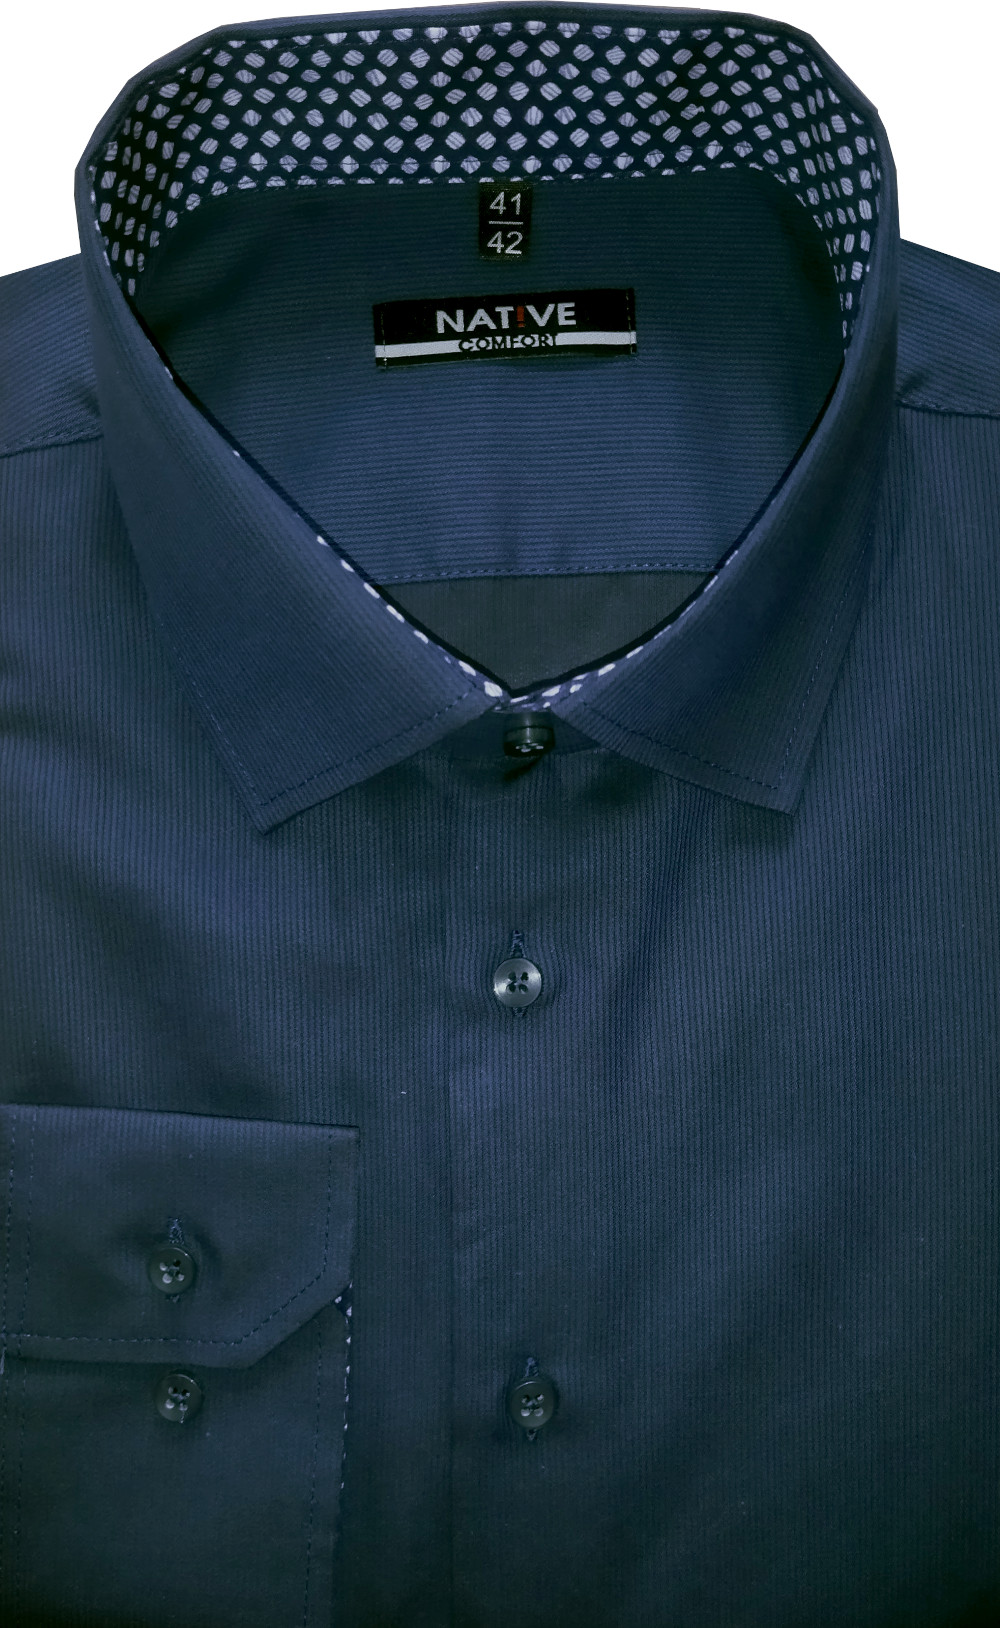 Pánská košile (tmavě modrá) s dlouhým rukávem, vel. 41/42 - N225/334